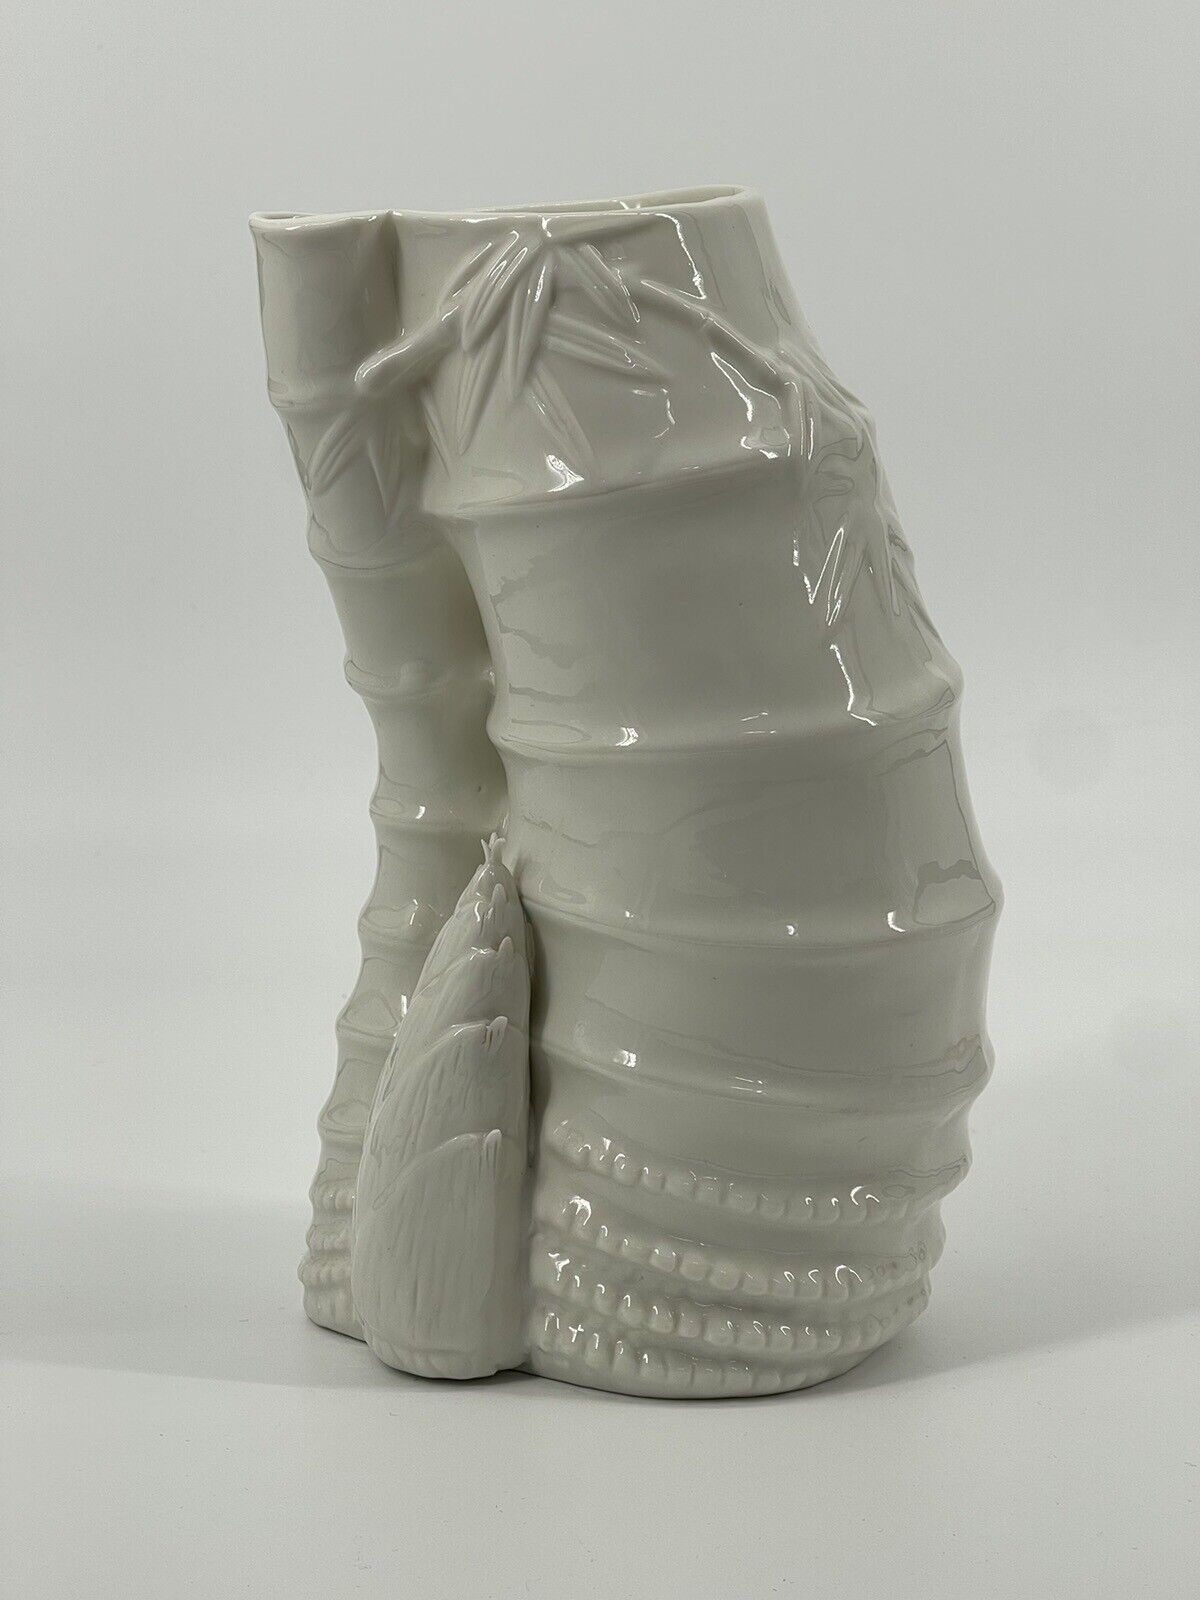 VTG Porcelain Asian Vase Vessel Bamboo Design White Blanc de Chine Glossy 10in